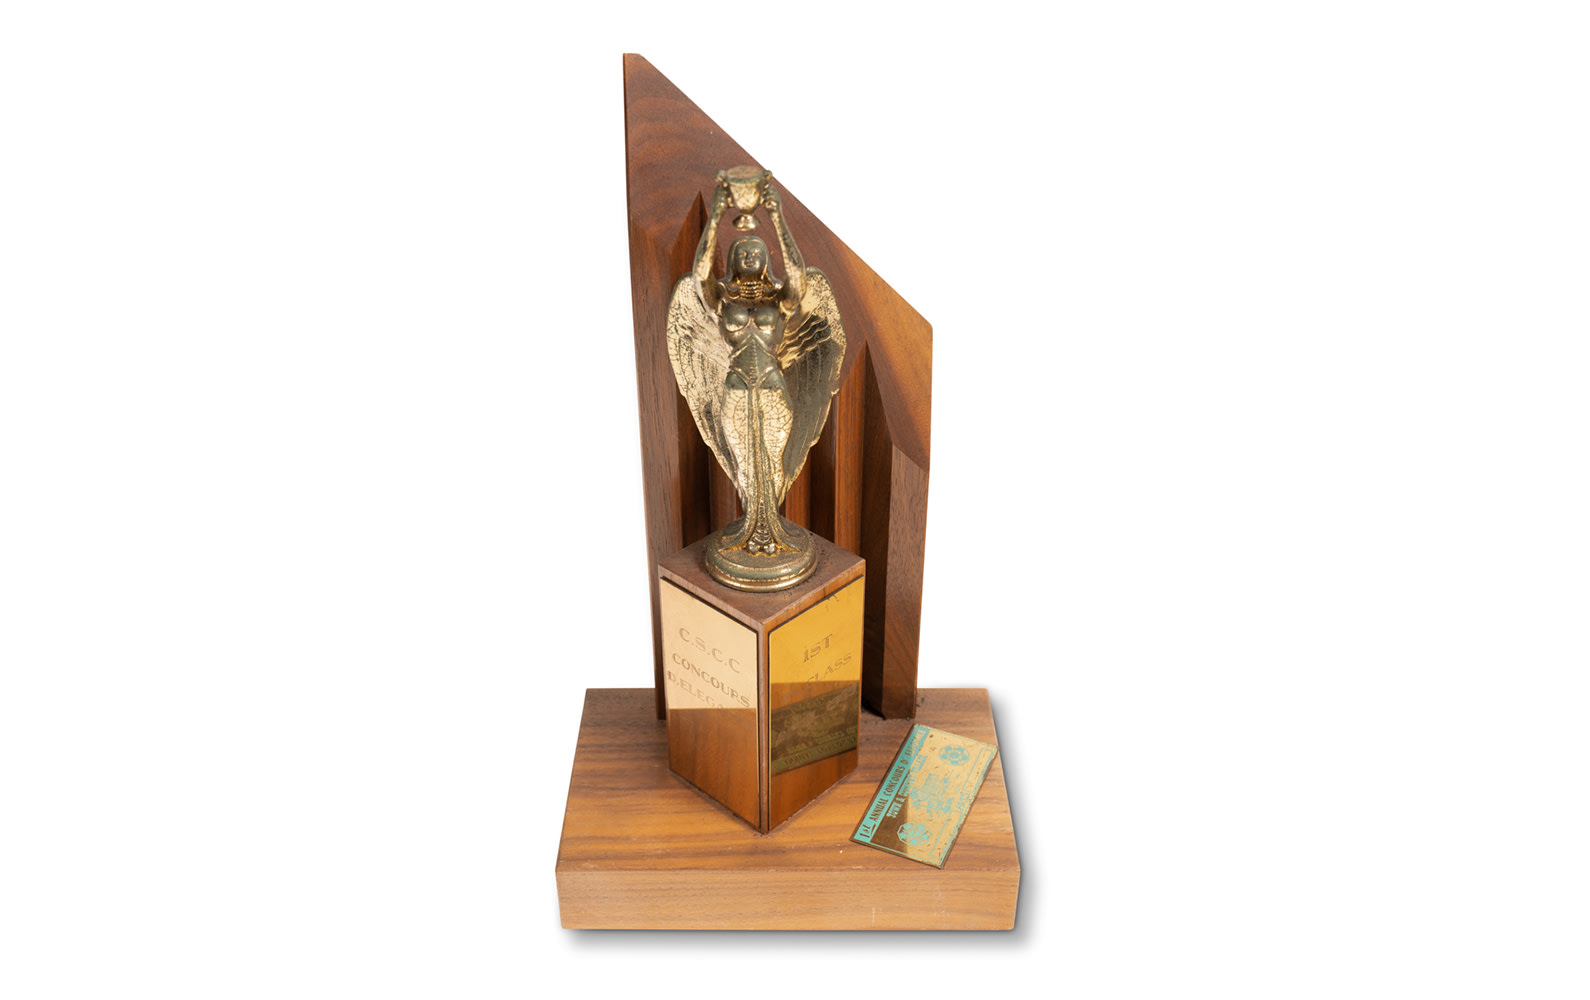 1955 CSCC Concours d'Elegance Trophy